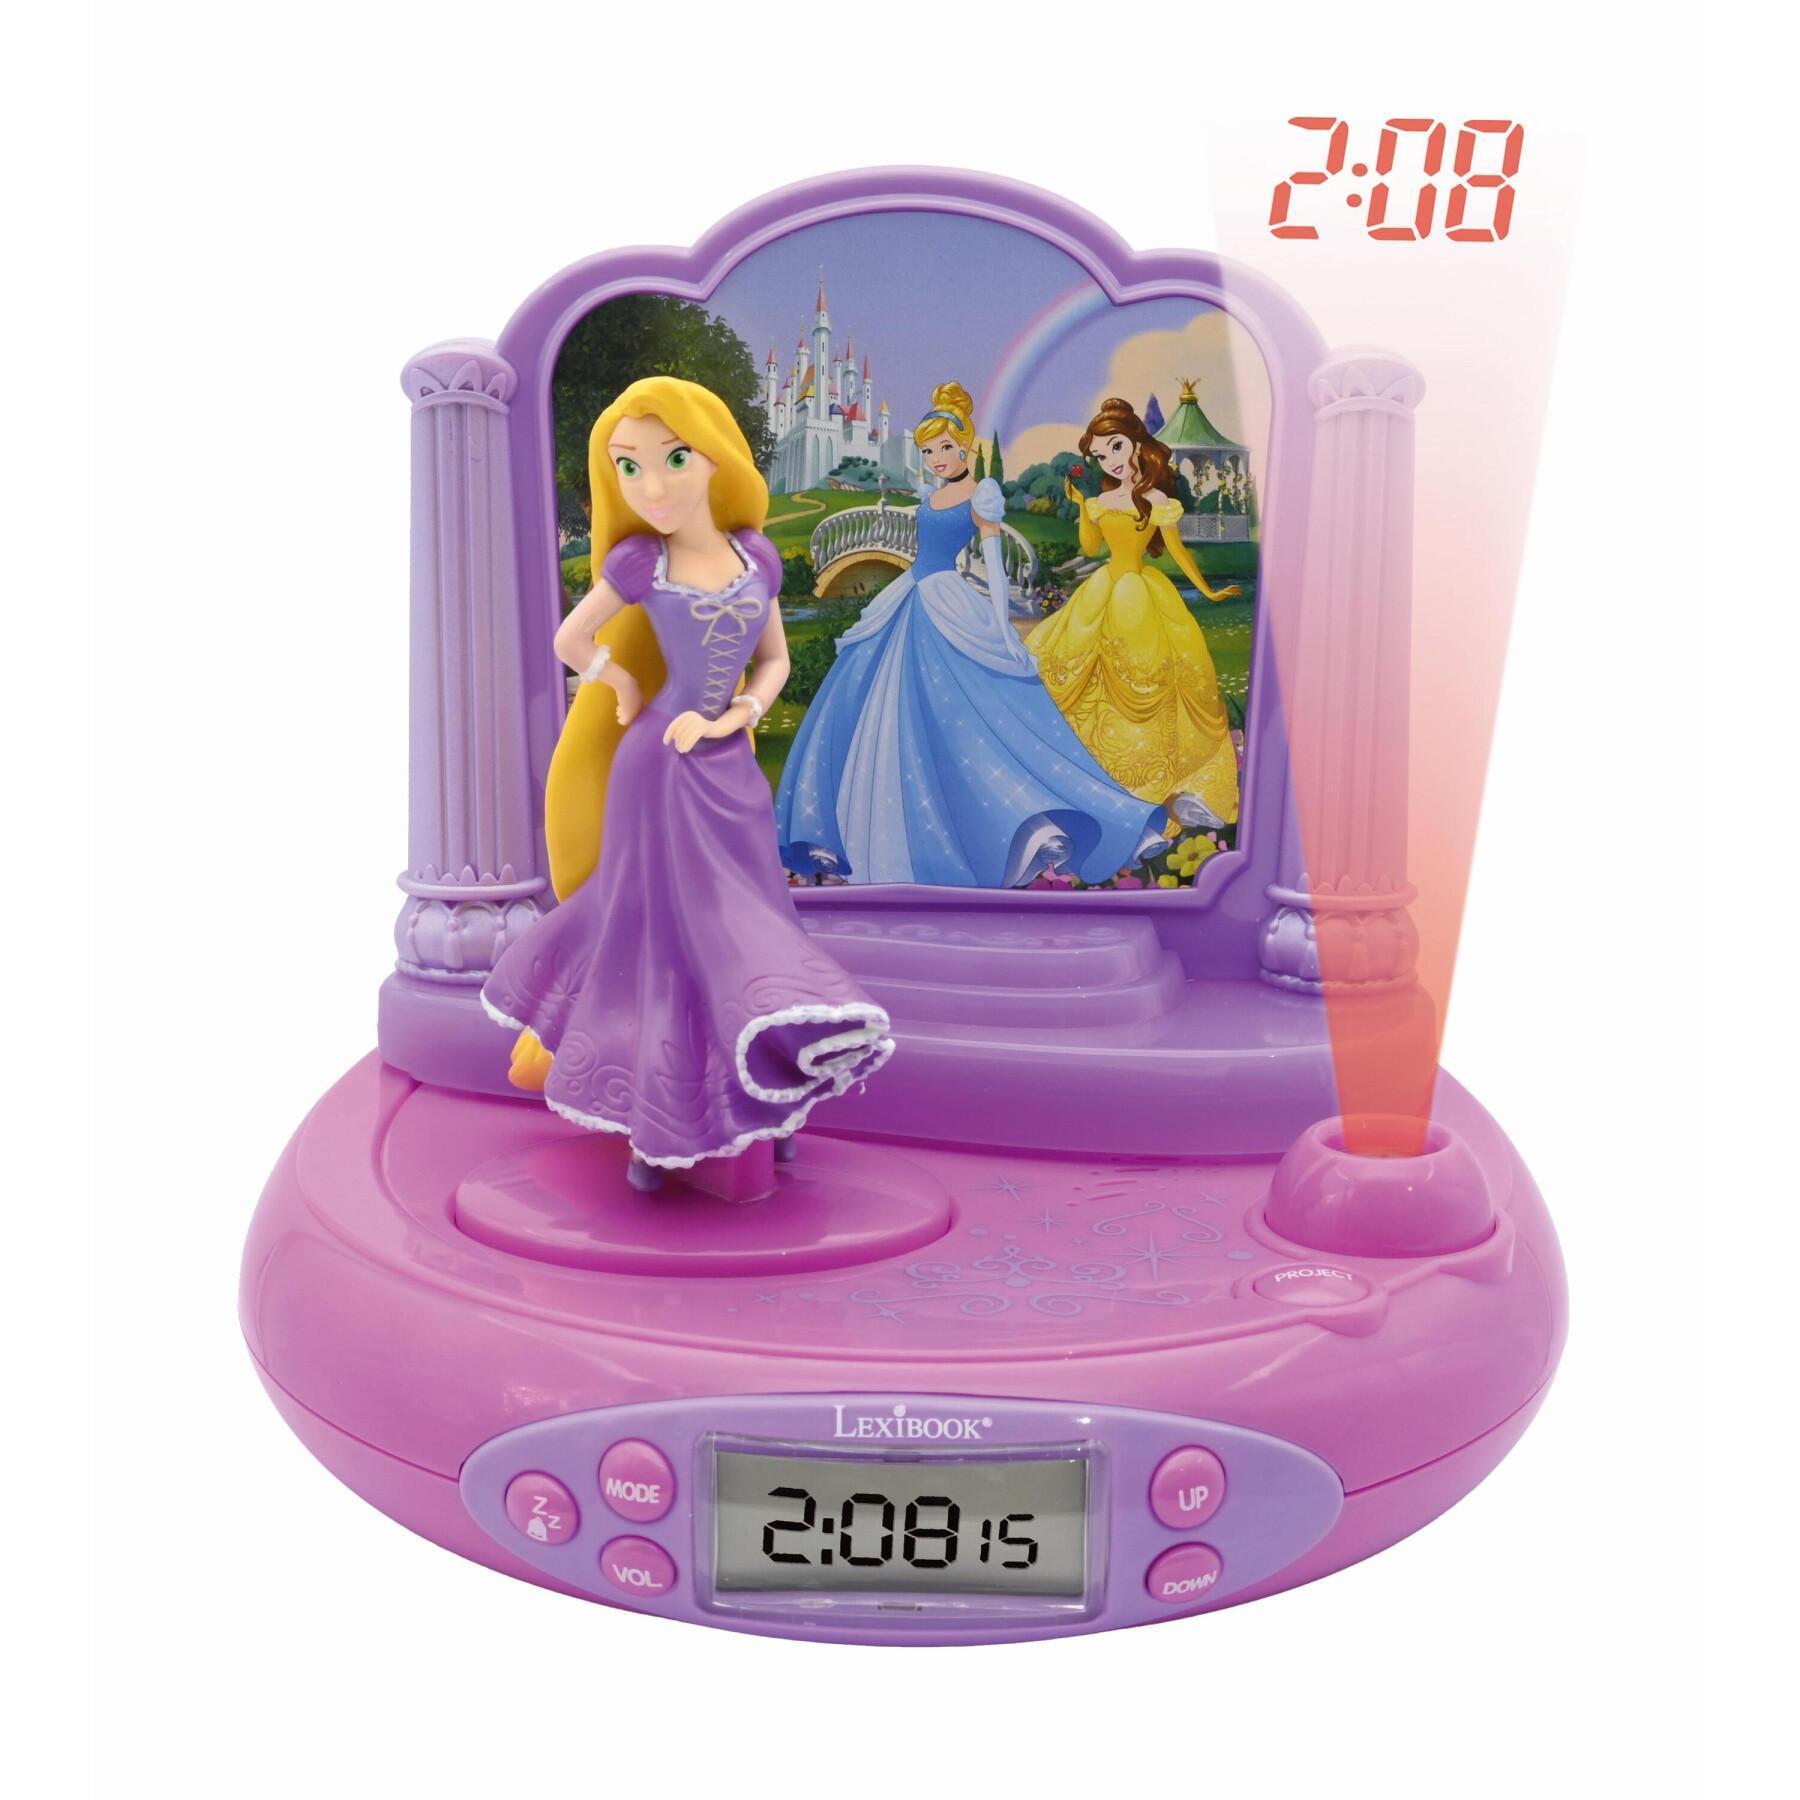 lexibook - Réveil projecteur Disney Princesses fonction minuteur - Radio,  lecteur CD/MP3 enfant - Rue du Commerce